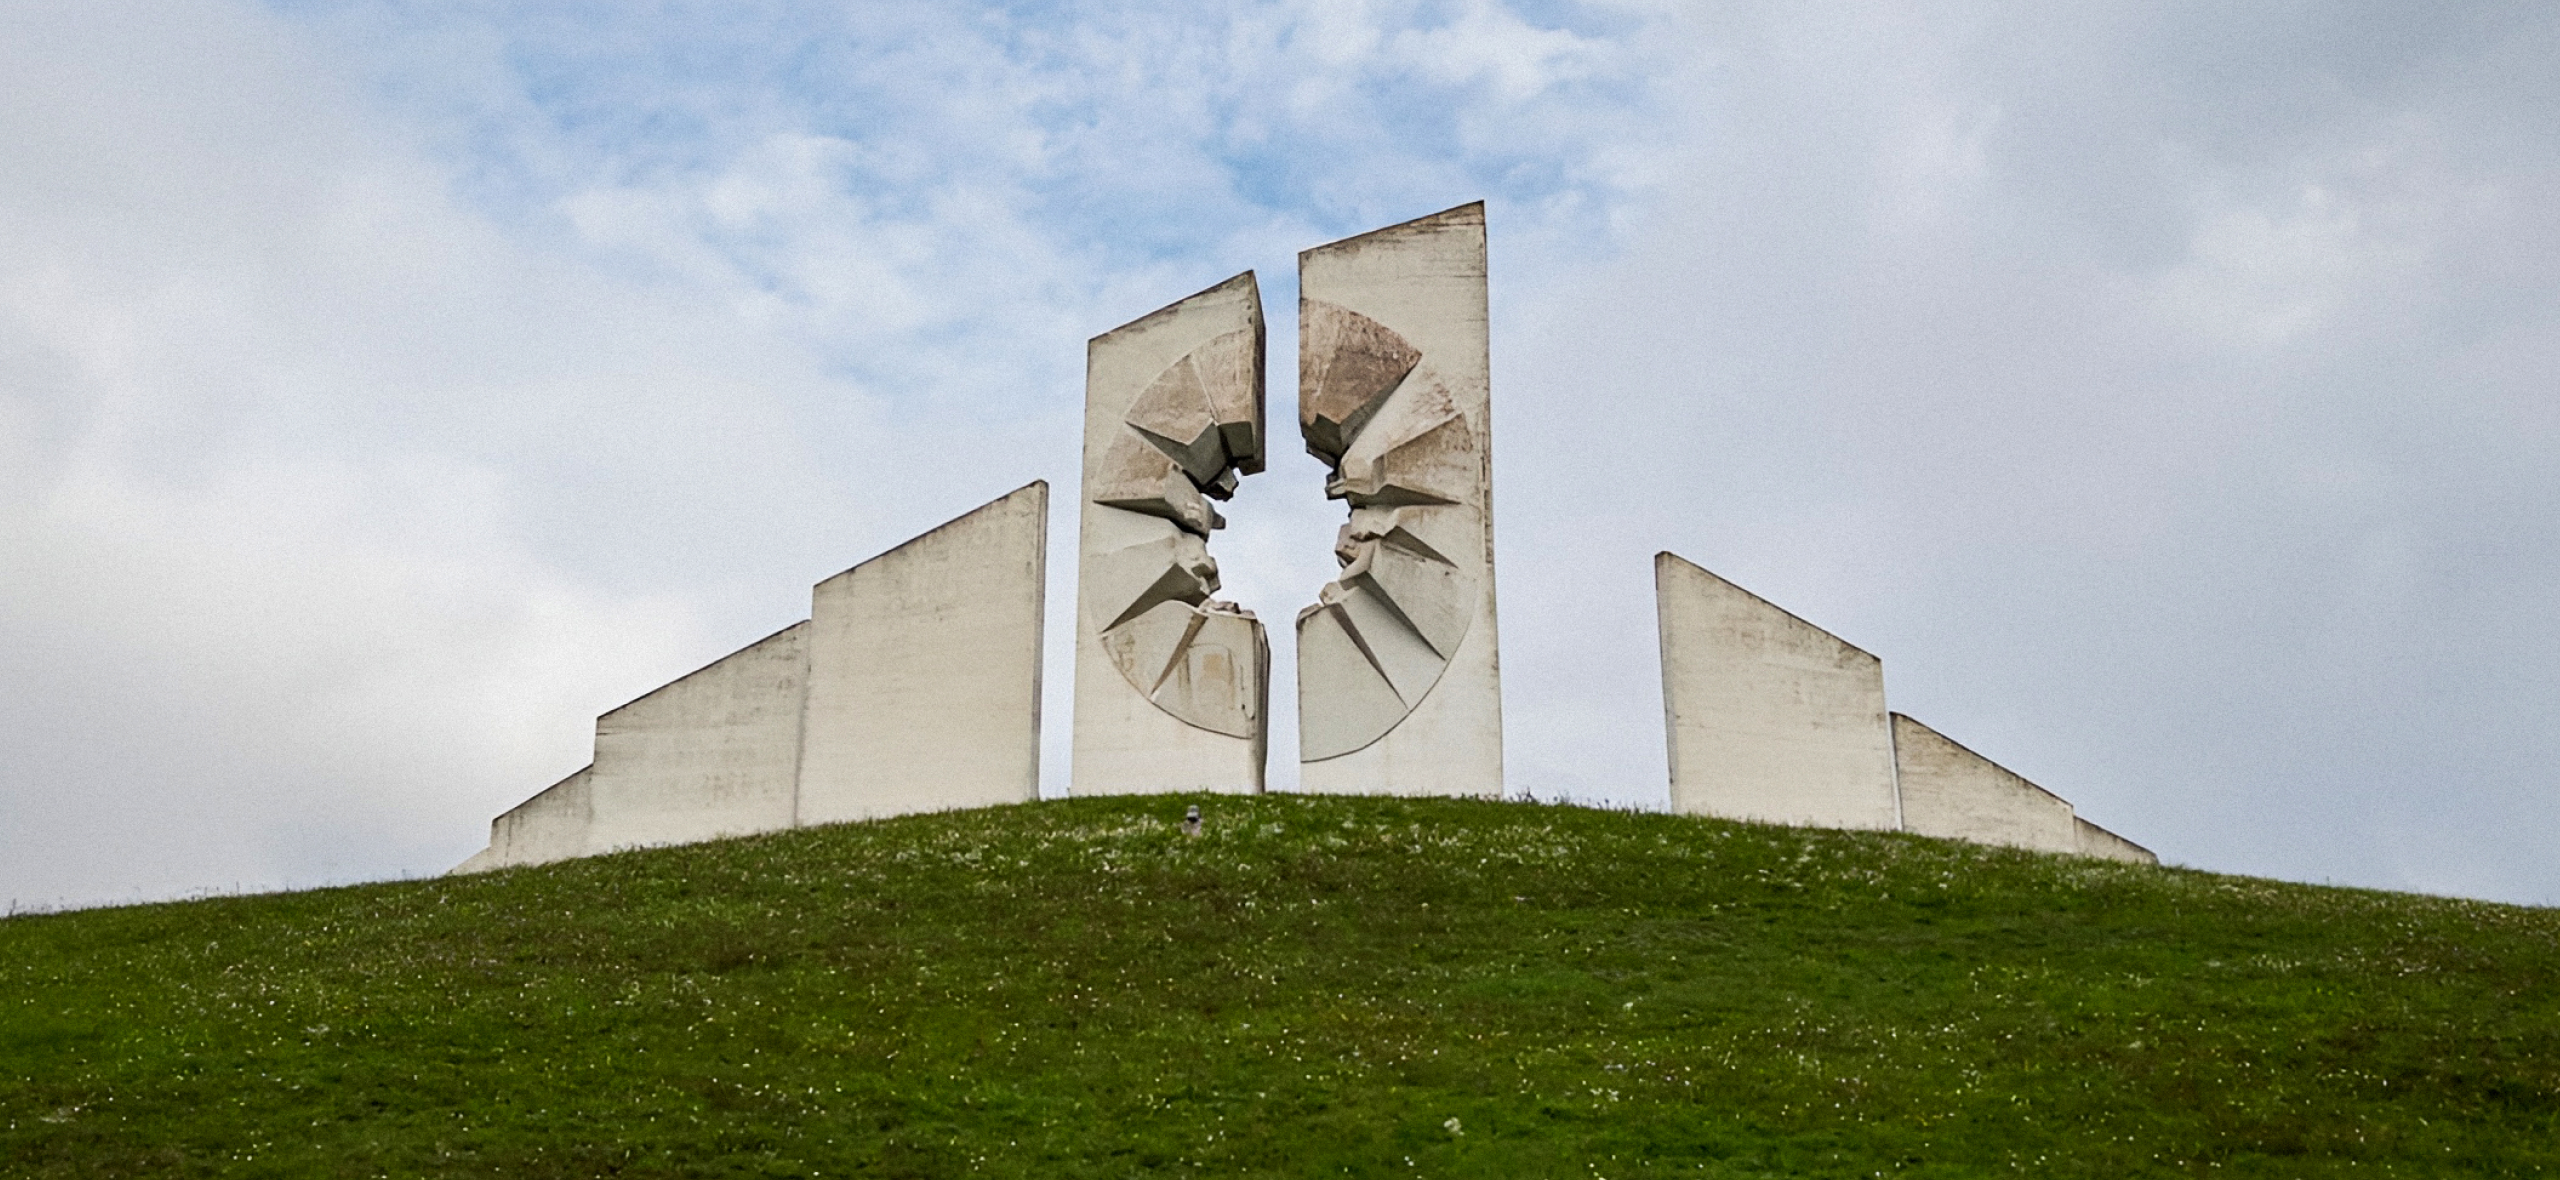 Как я объездил Сербию, Хорватию, Боснию и Герцеговину в поисках затерянных монументов